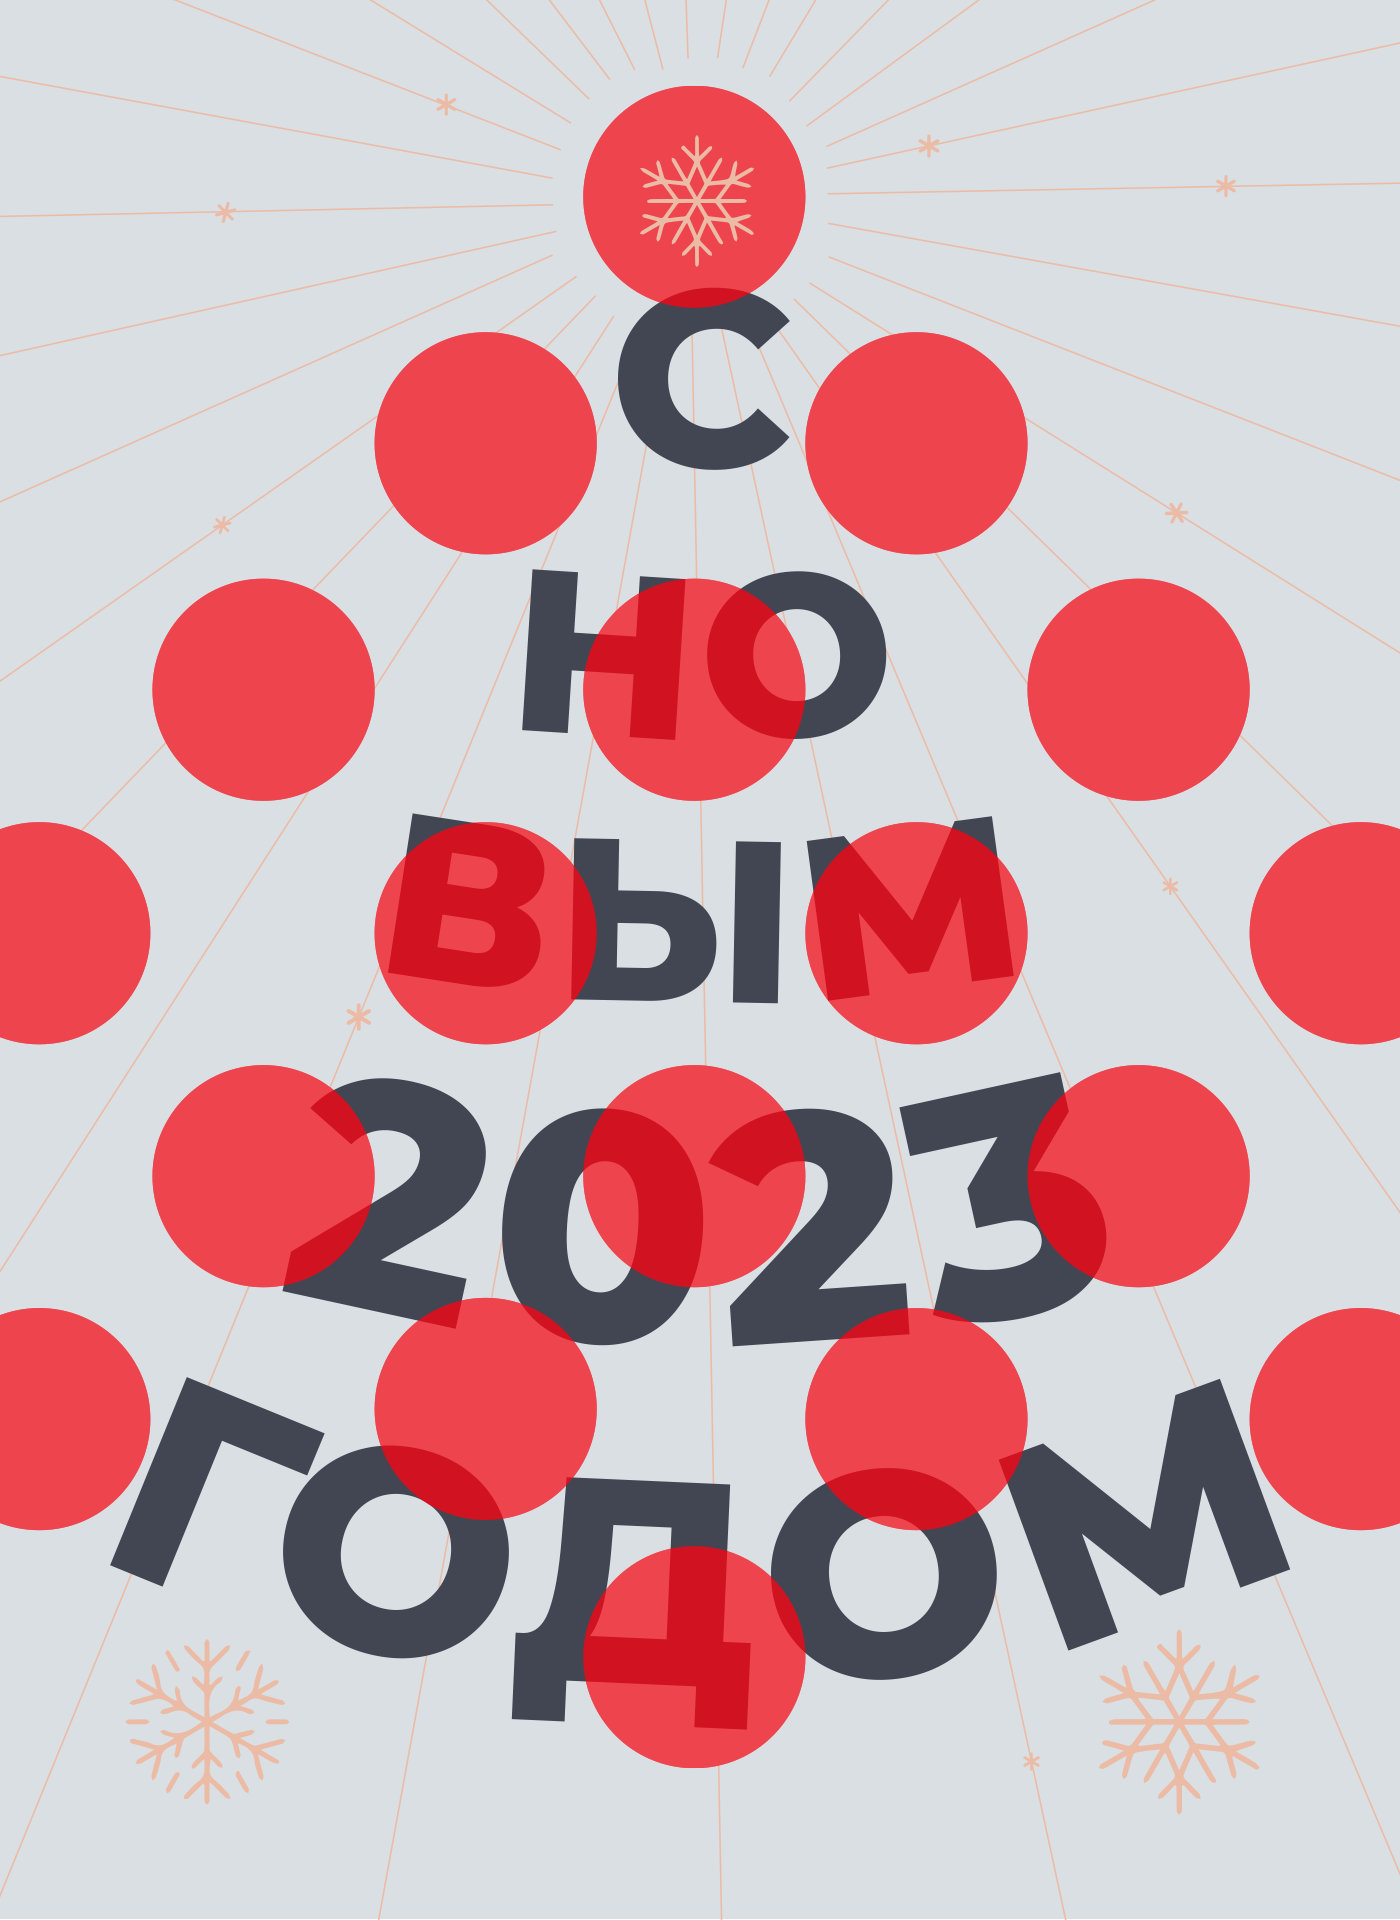 Команда click.ru поздравляет вас с наступающим Новым годом!